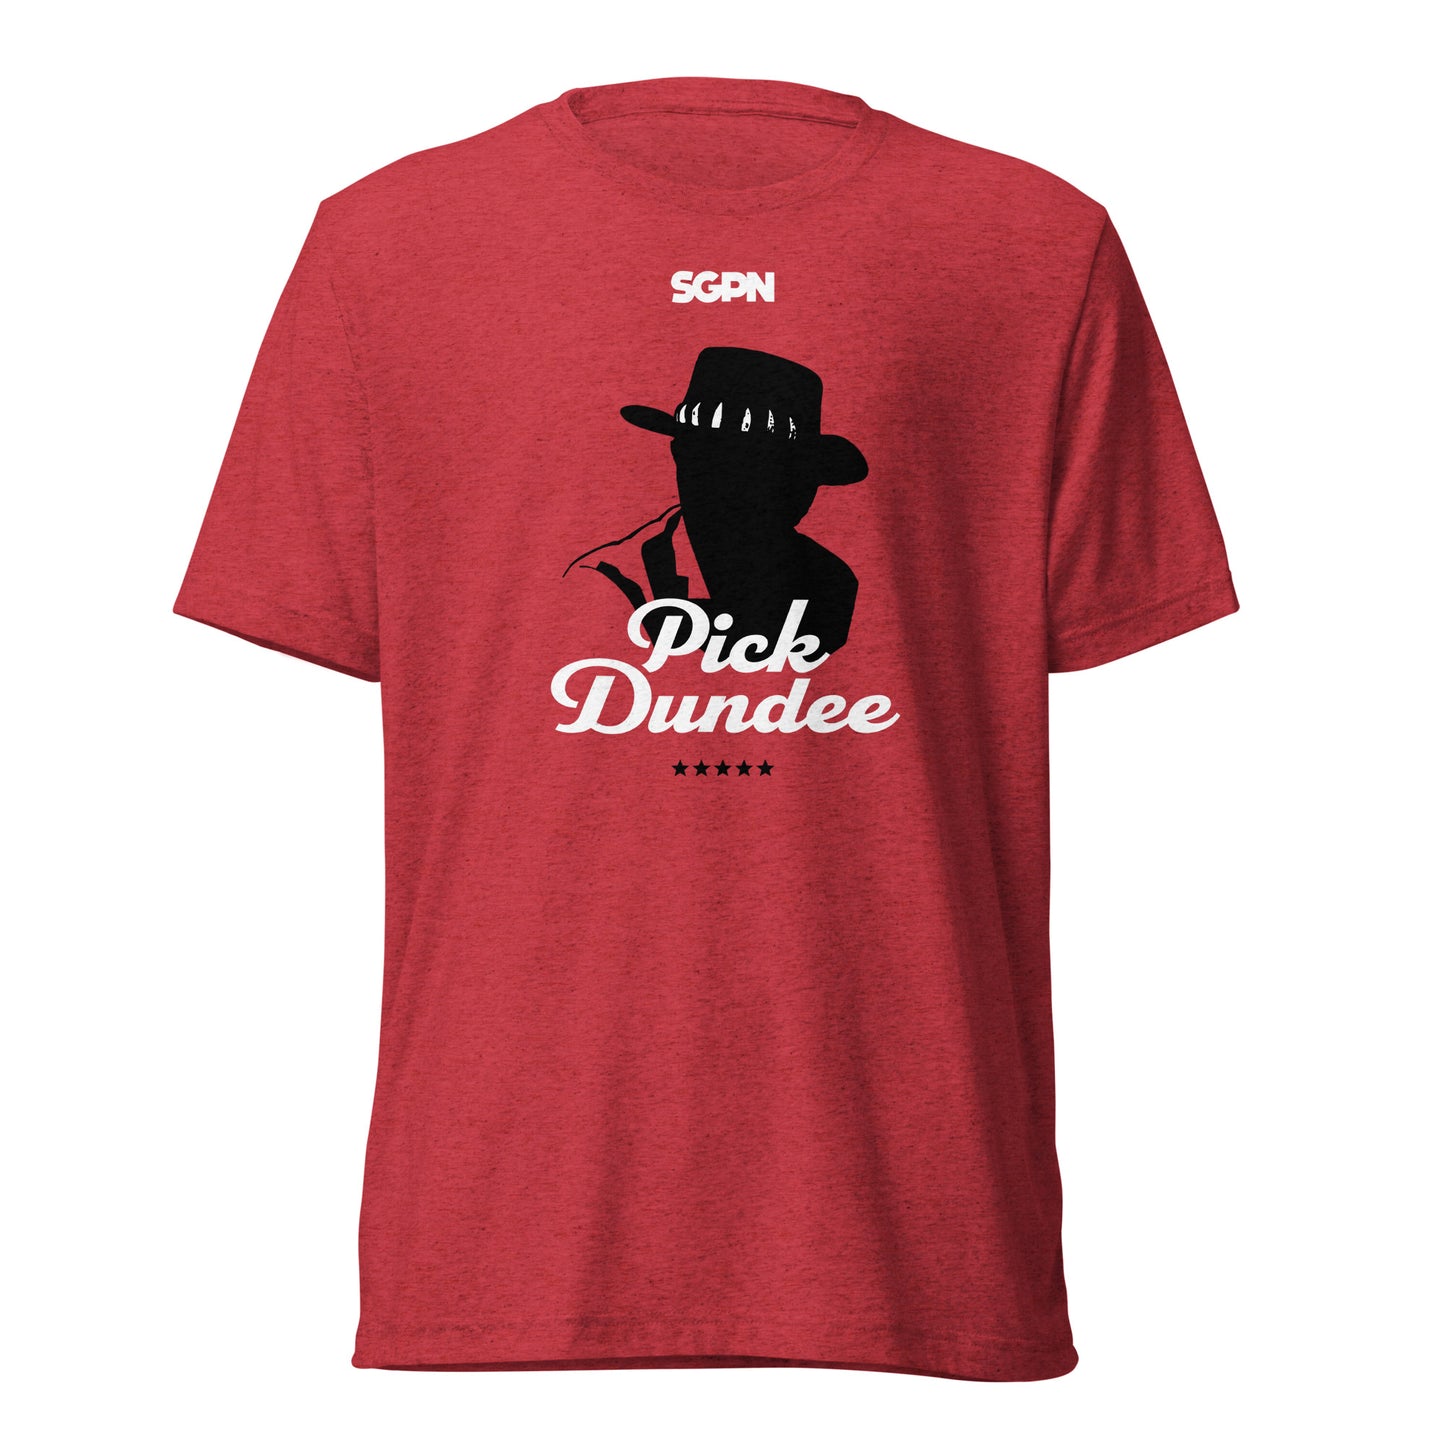 Pick Dundee - Short sleeve t-shirt